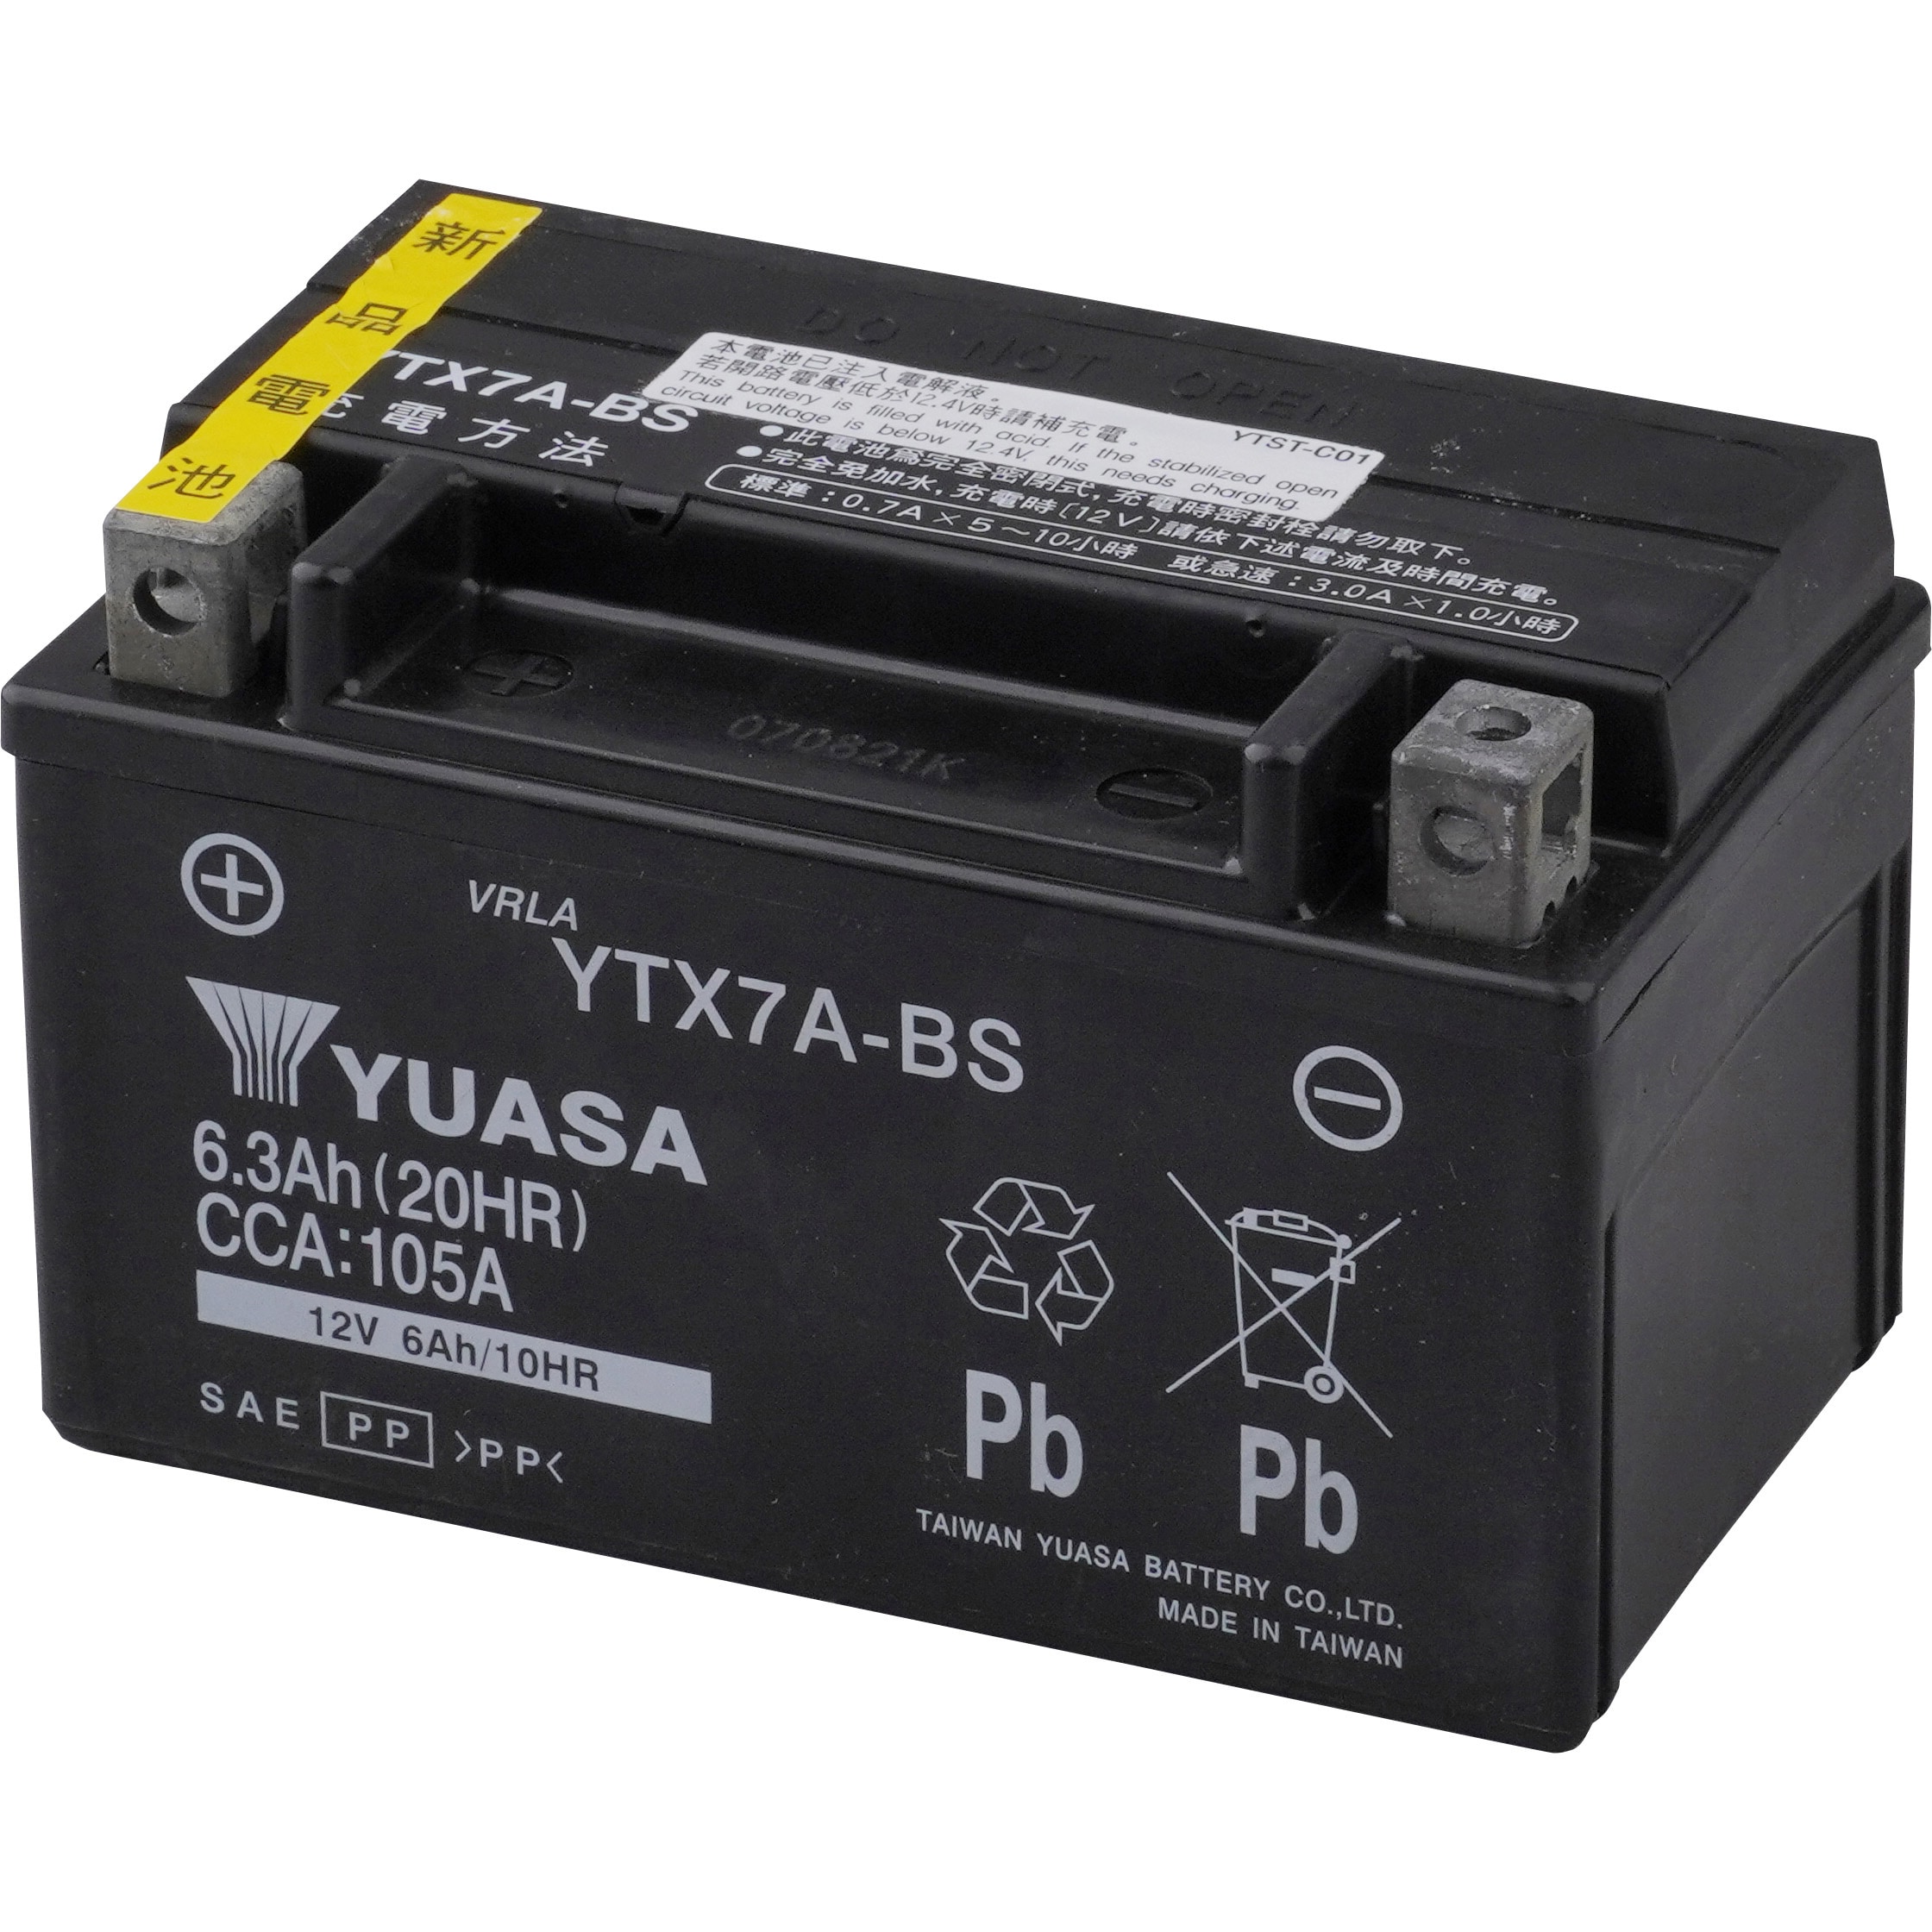 【新品 送料込み】YTX7A-BS バッテリー 台湾ユアサ バイク YUASA